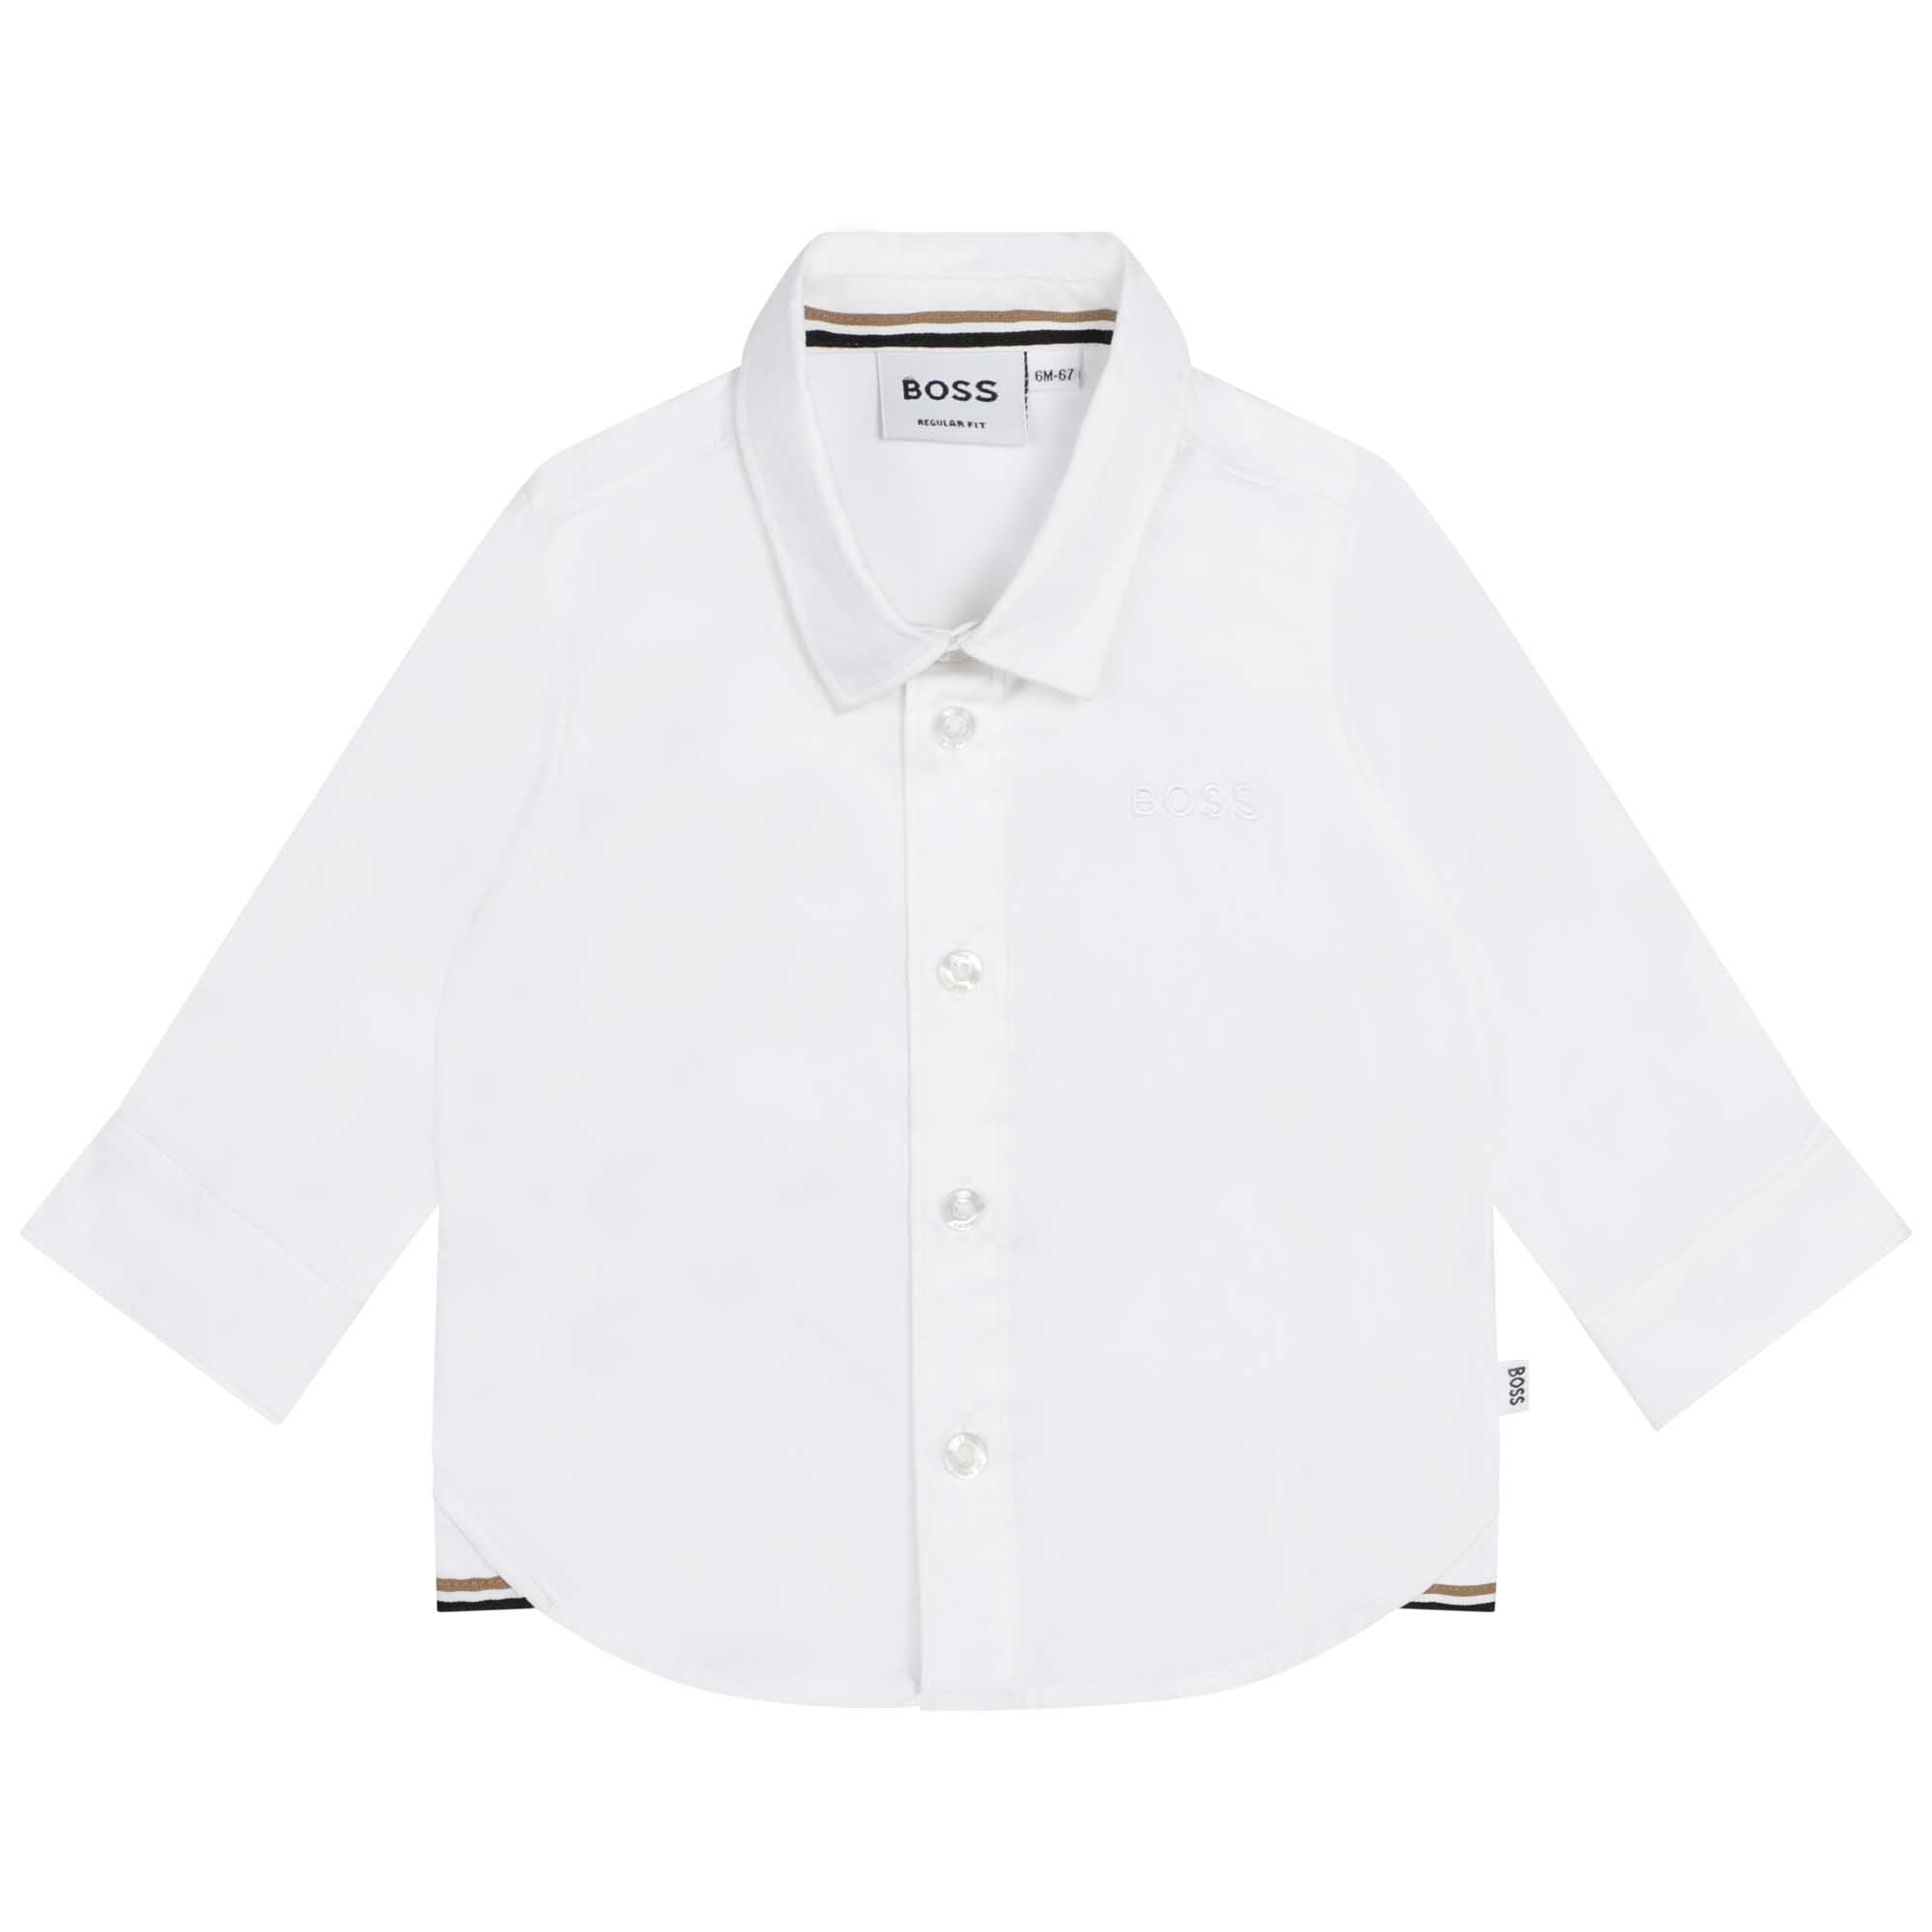 Hugo Boss Baby Boys White Dress Shirt